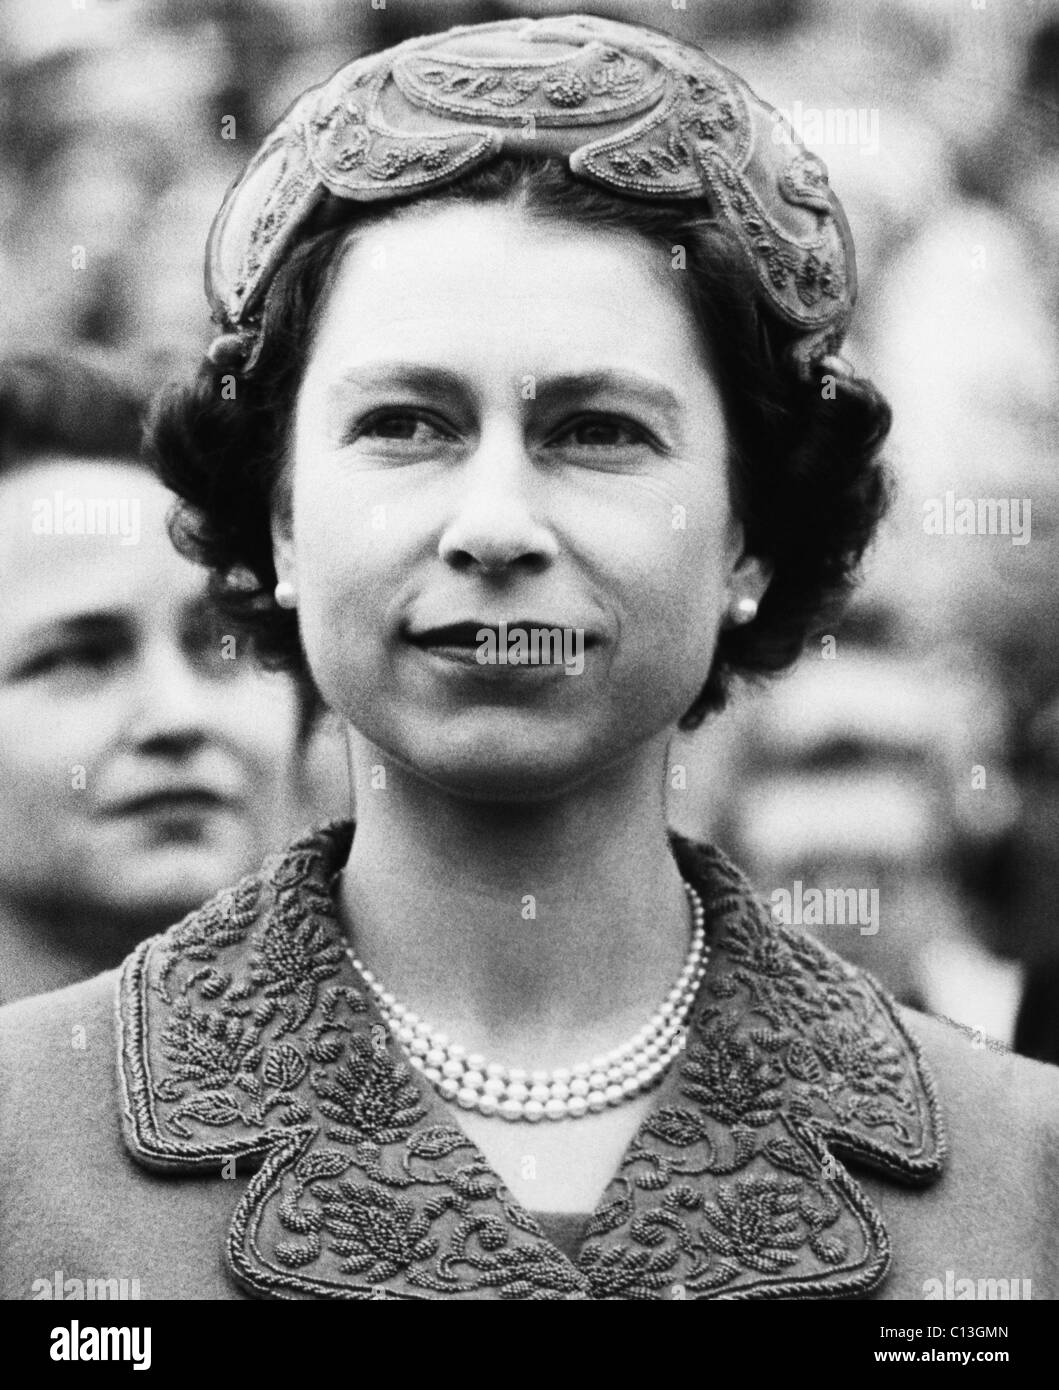 Britisches Königshaus. Königin Elizabeth II von England, etwa Ende der 1950er Jahre. Stockfoto